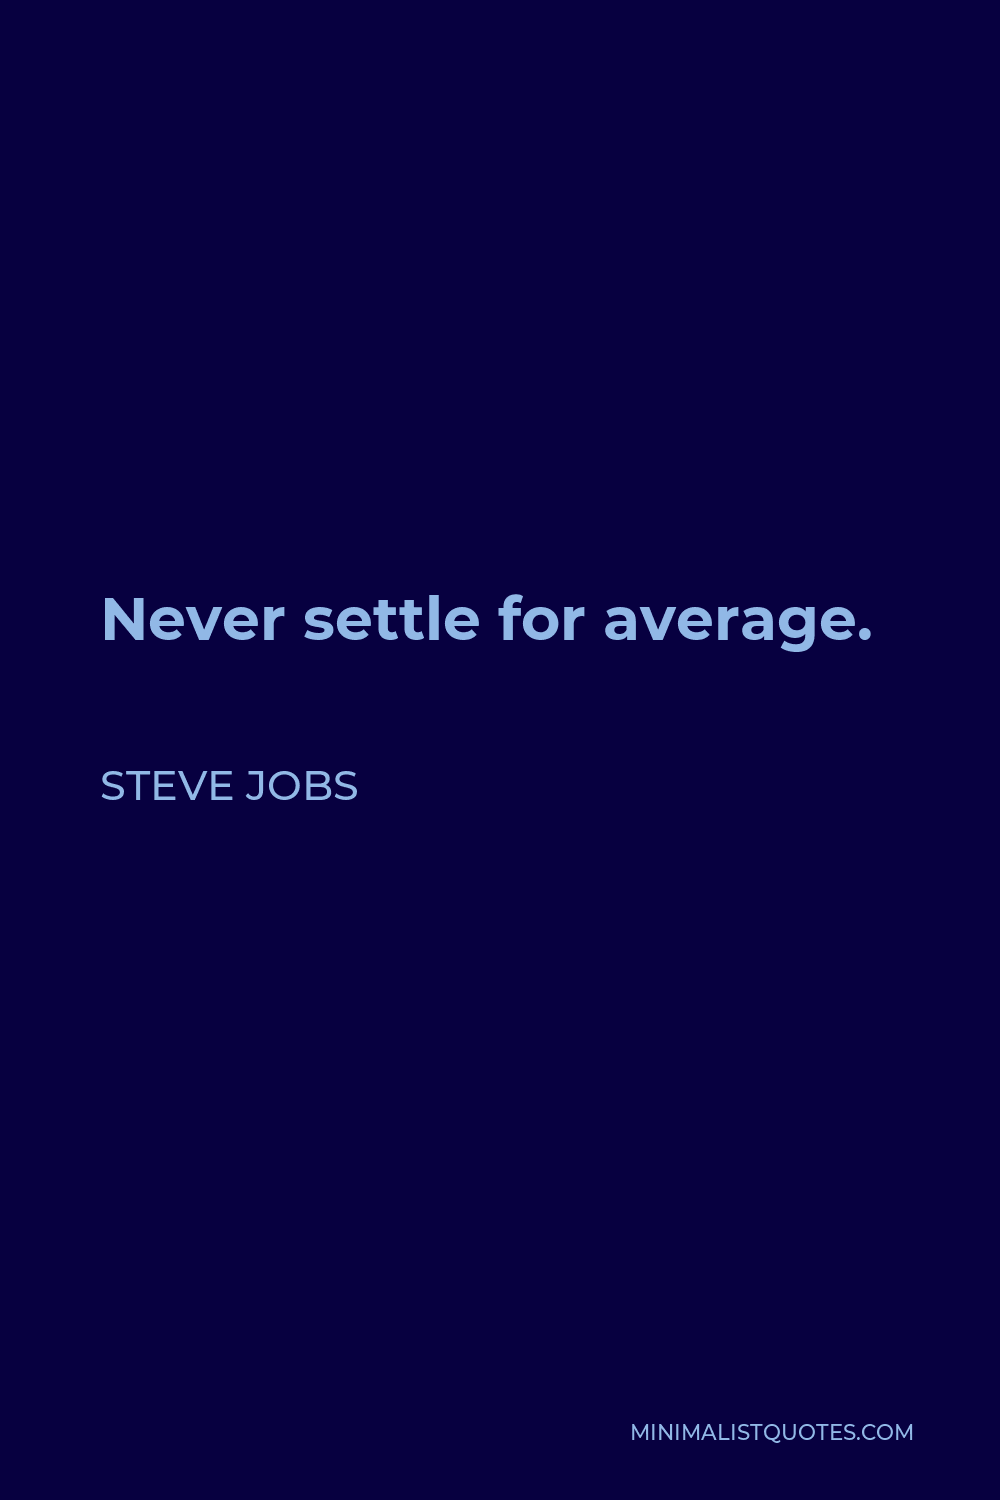 Steve Jobs Quote - Never settle for average.